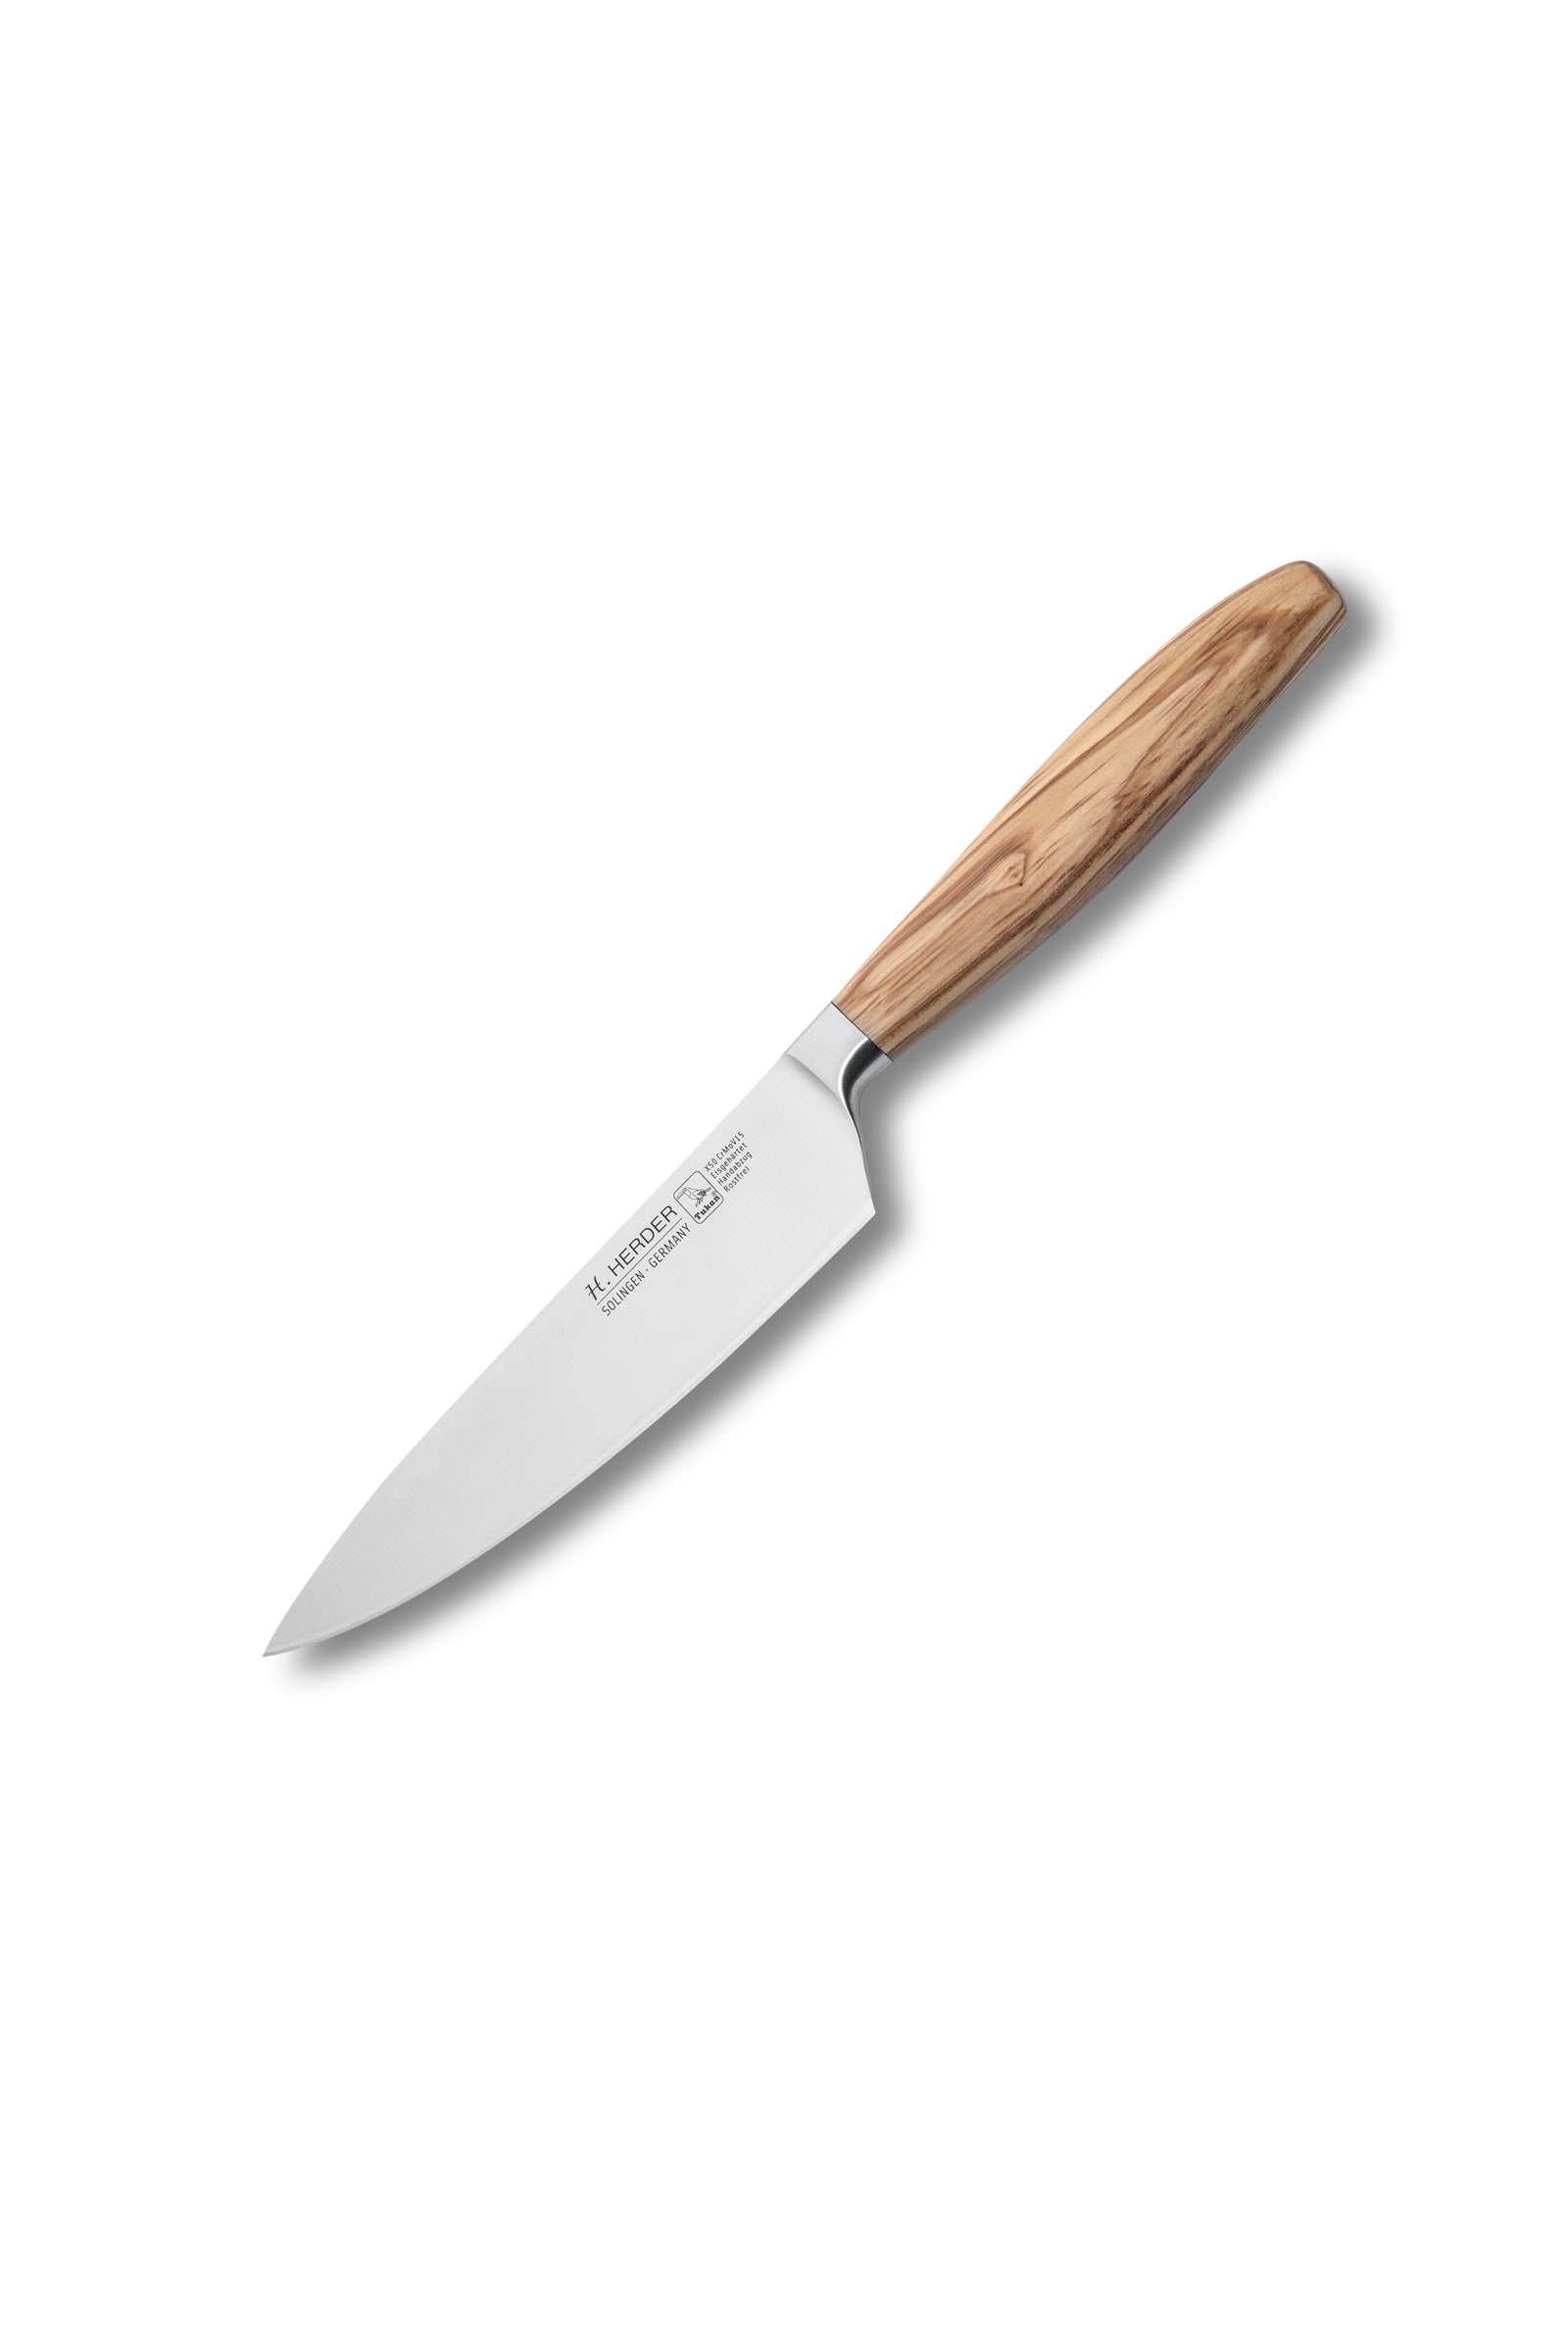 Couteau de chef Eterno, bois d'olivier, longueur de lame 16cm, forgé